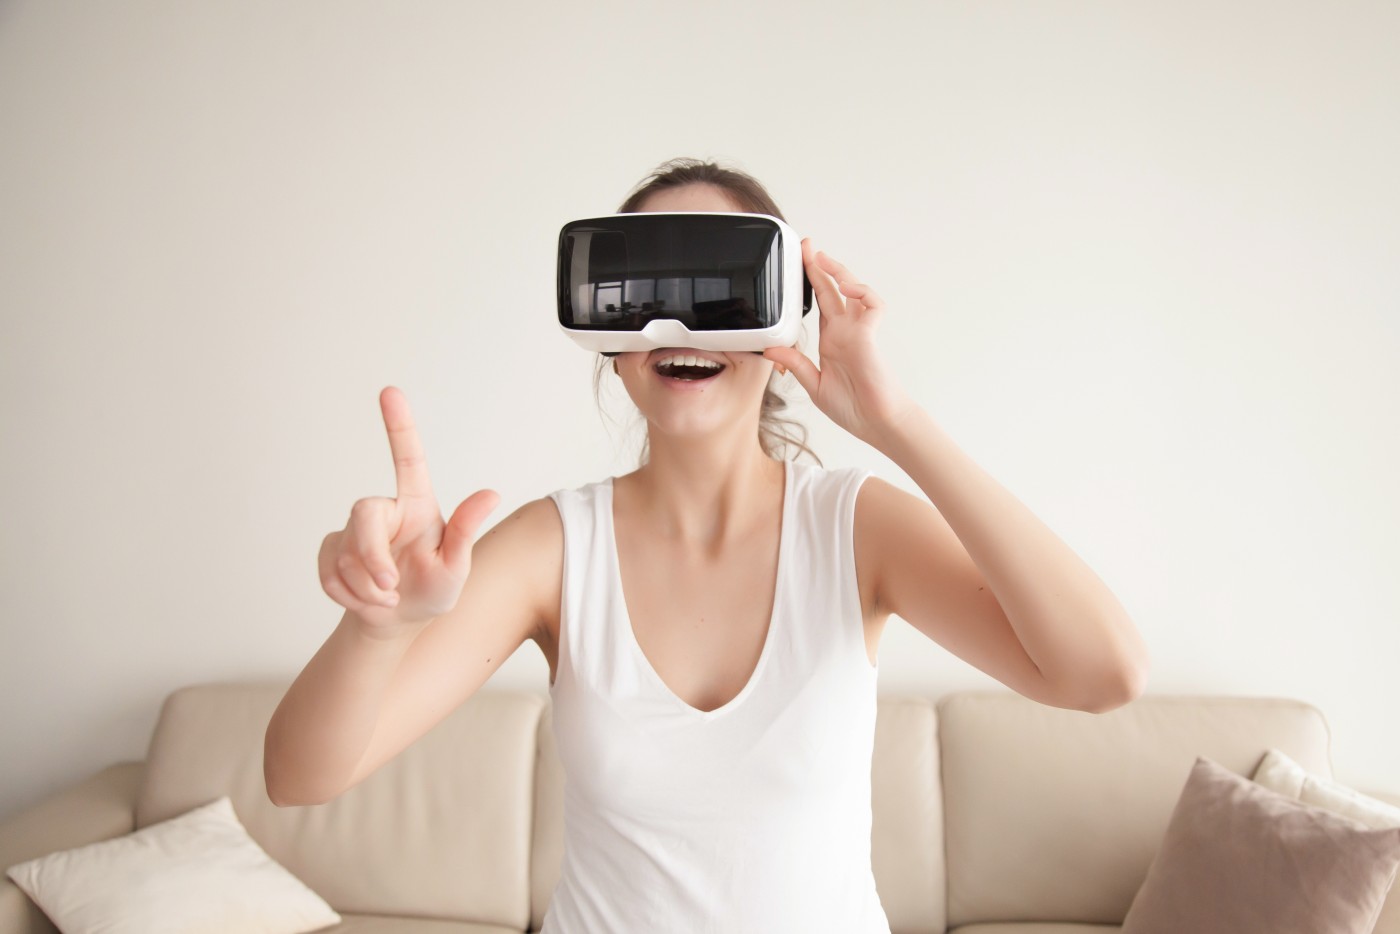 图片中是一位女士穿着白色无袖上衣，戴着虚拟现实头盔，似乎在体验VR内容，正用手指触碰或操作虚拟界面。